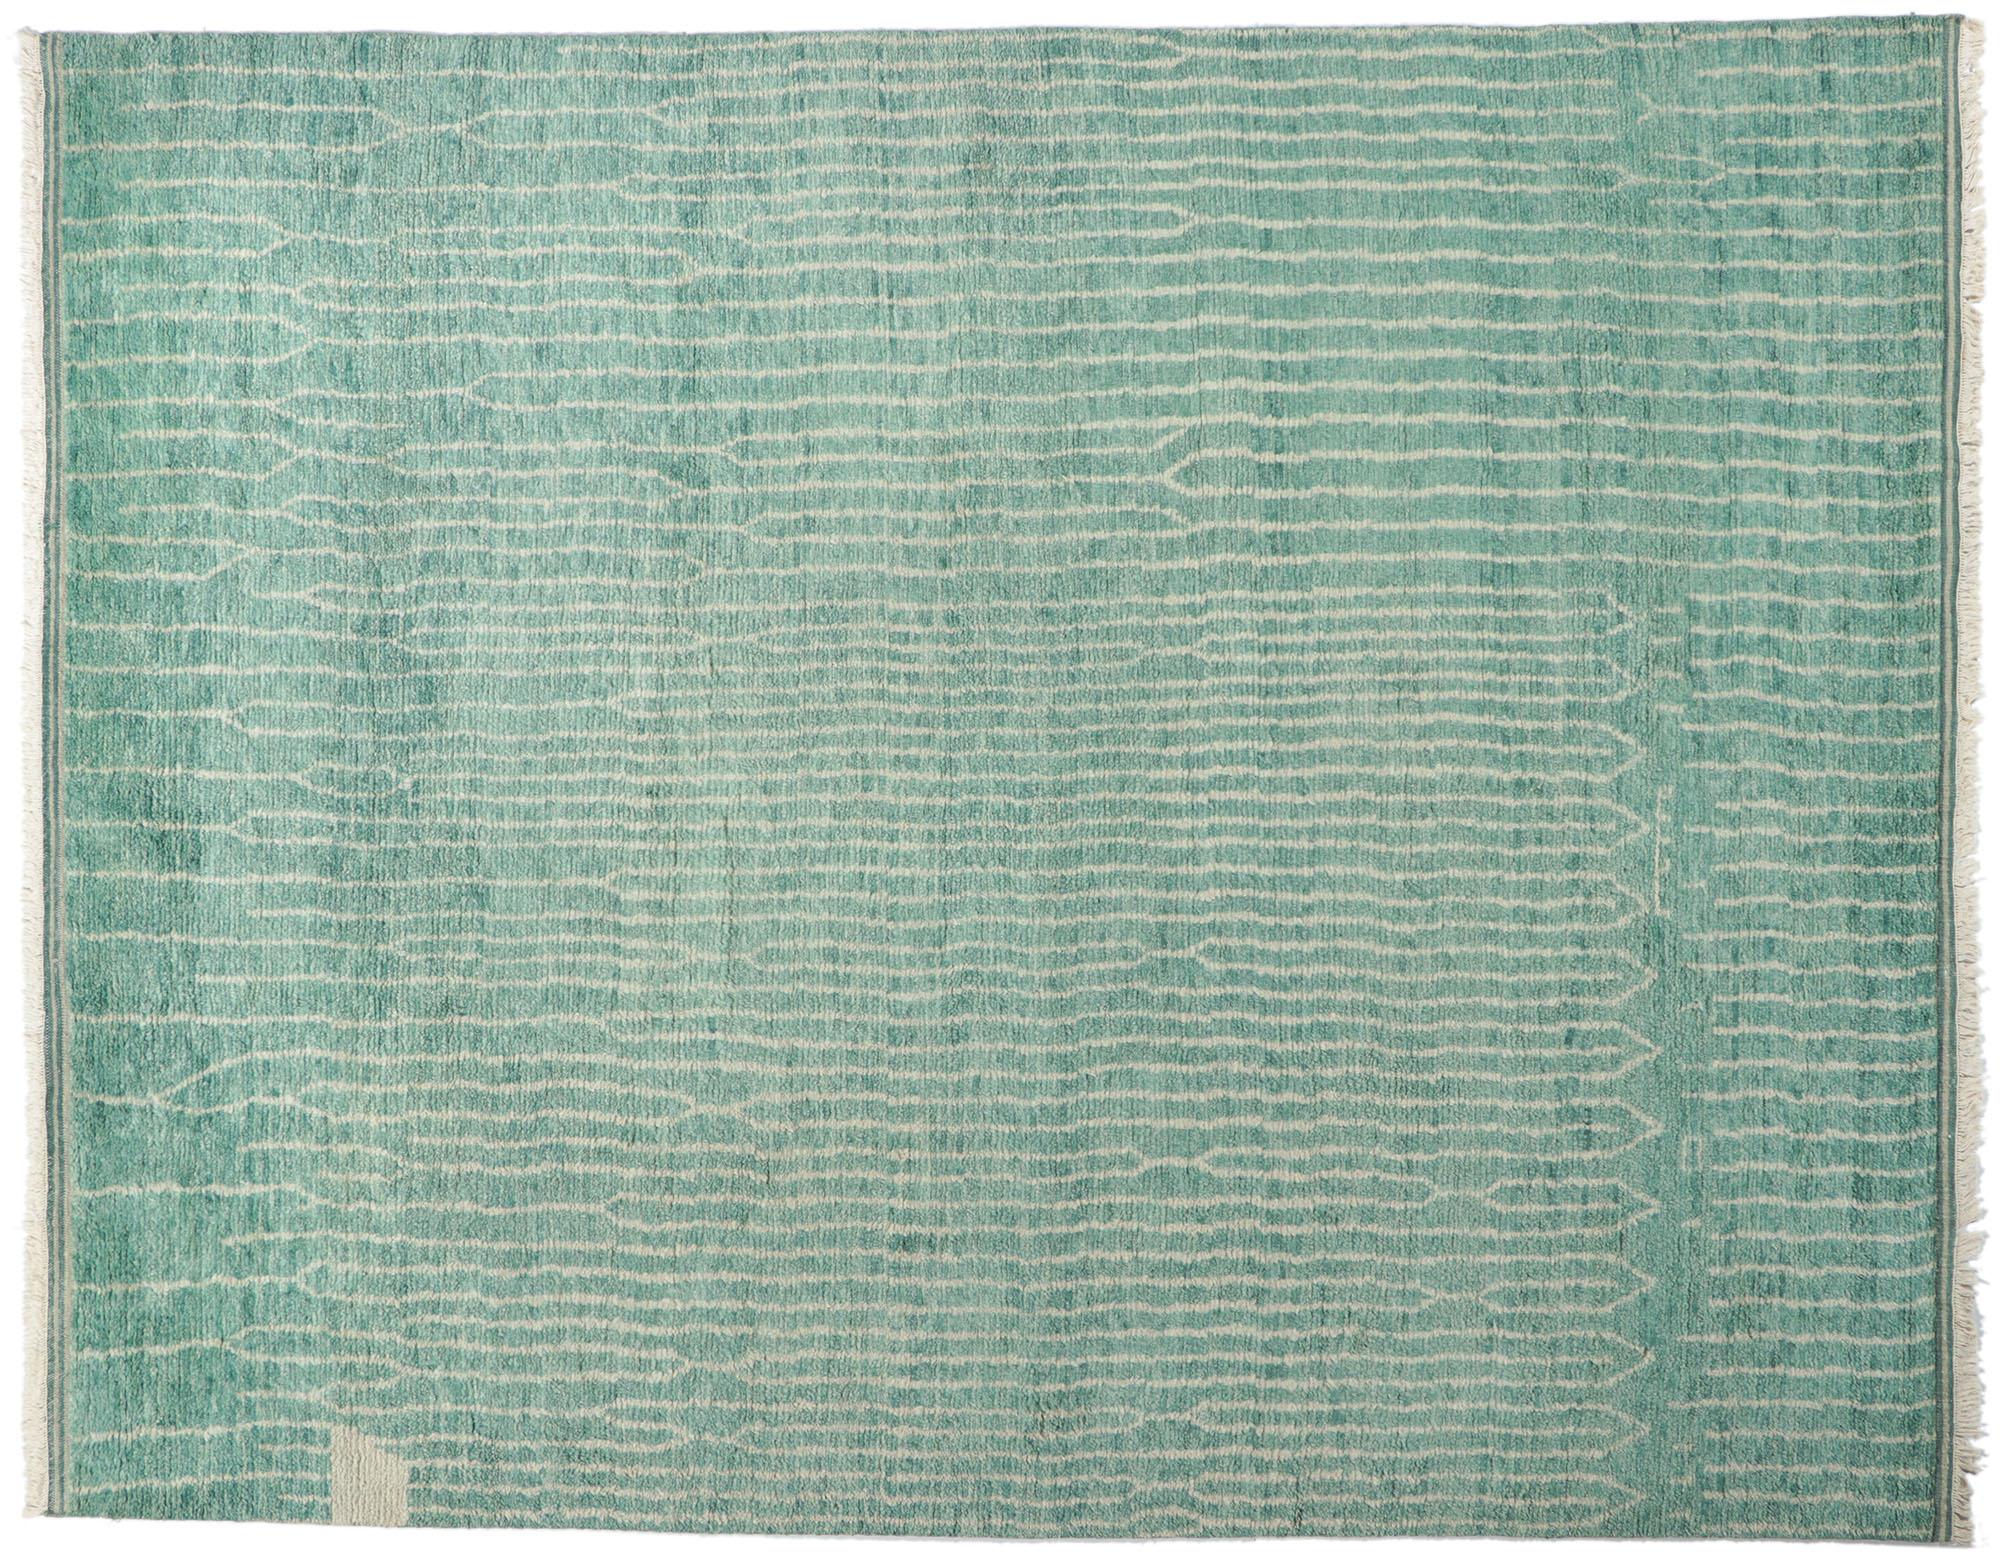 30774 New Contemporary Moroccan Style Rug 09'04 x 11'07. Ce tapis contemporain de style marocain, en laine nouée à la main, est une vision captivante de la beauté tissée. Il évoque un chalet côtier avec des couleurs qui rappellent le verre de mer et